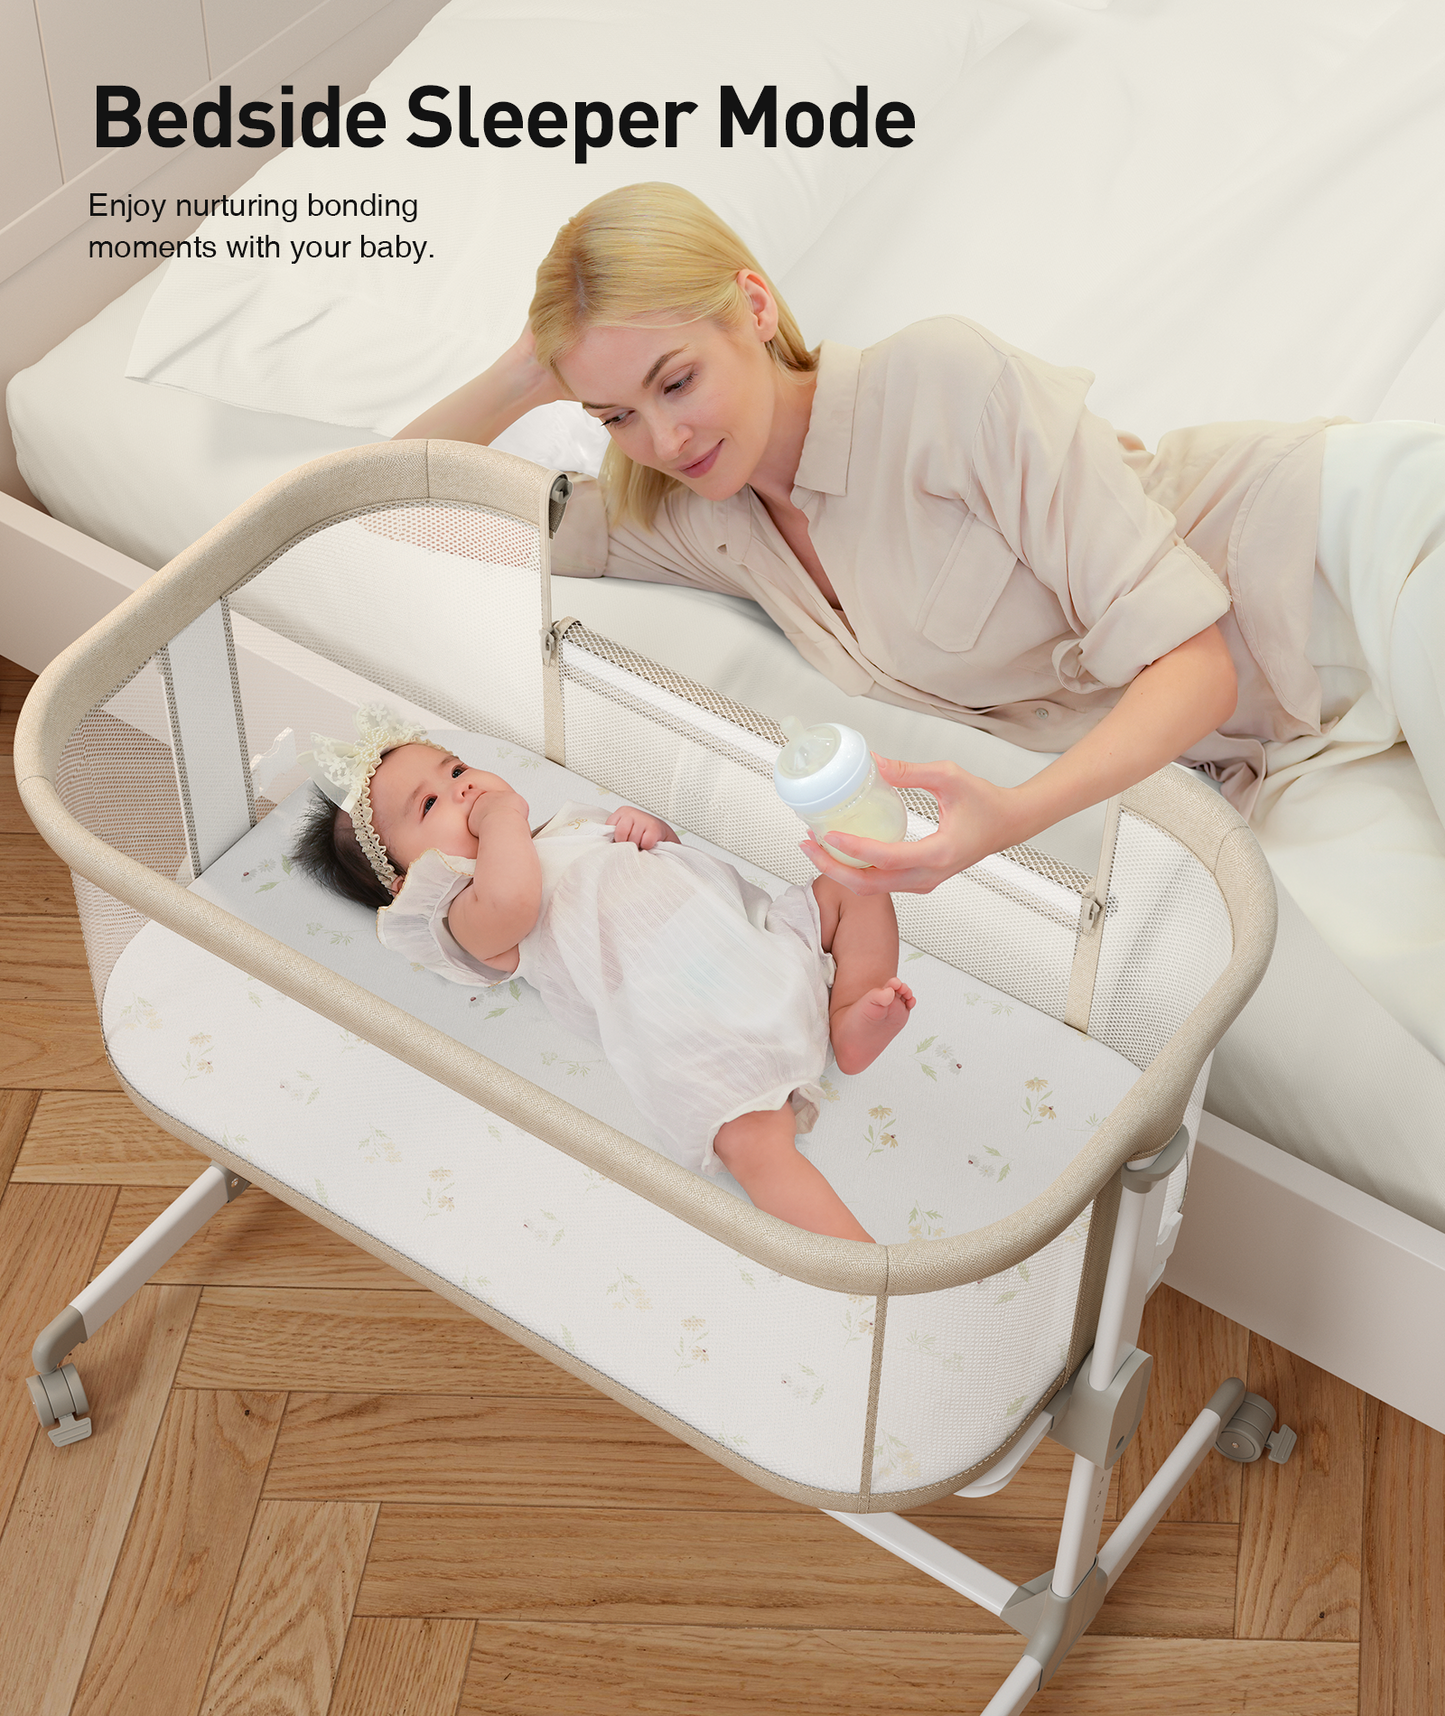 Fodoss Baby Bassinets Bedside Sleeper - All Mesh Bedside Bassinet with Wheels, 7 Height Adjustable Baby Bassinet for Infants, Beige